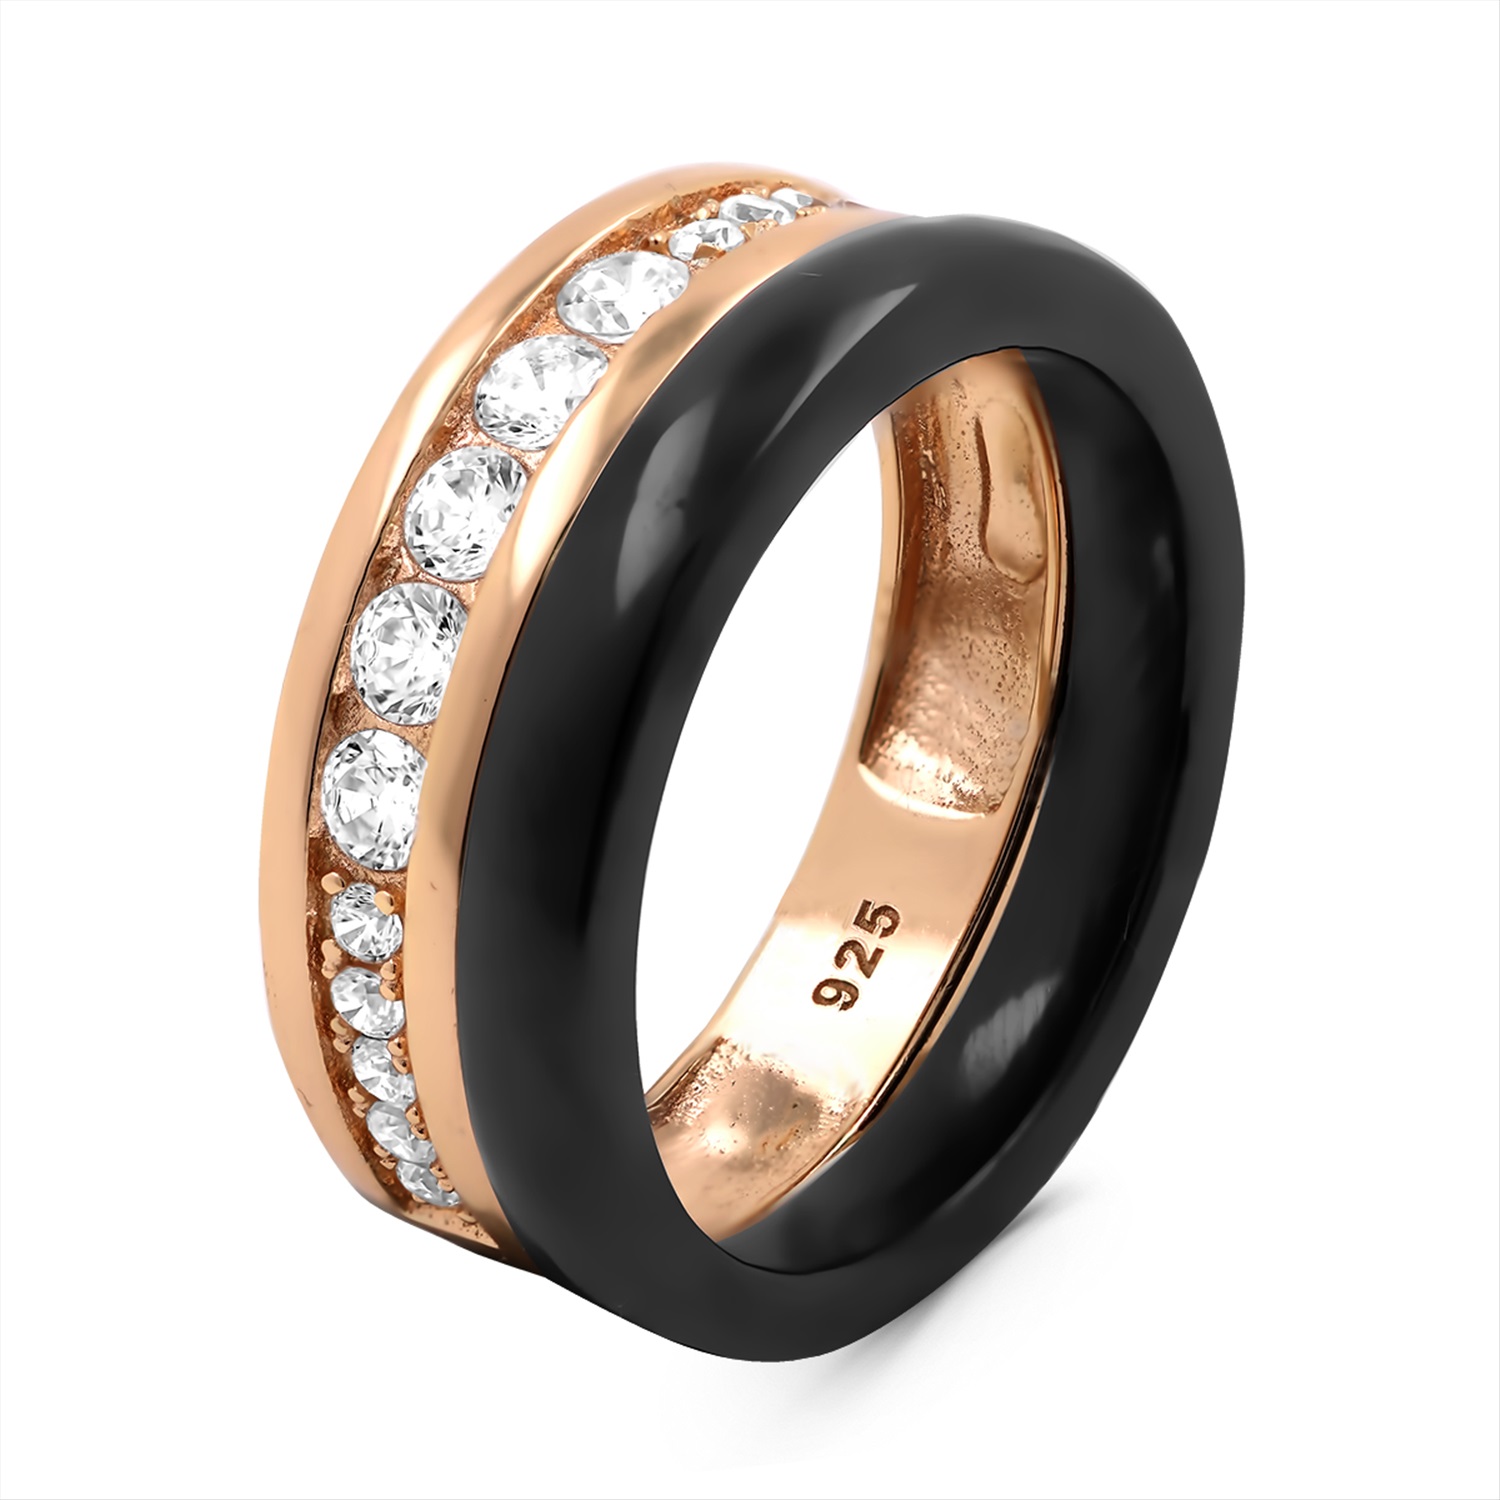 Черные кольца женские с золотом. Кольцо Жемчужина e349130. Кольцо из золоченого серебра. Золото керамика кольцо Яхонт. Кольцо керамика Сатурн Gucci.